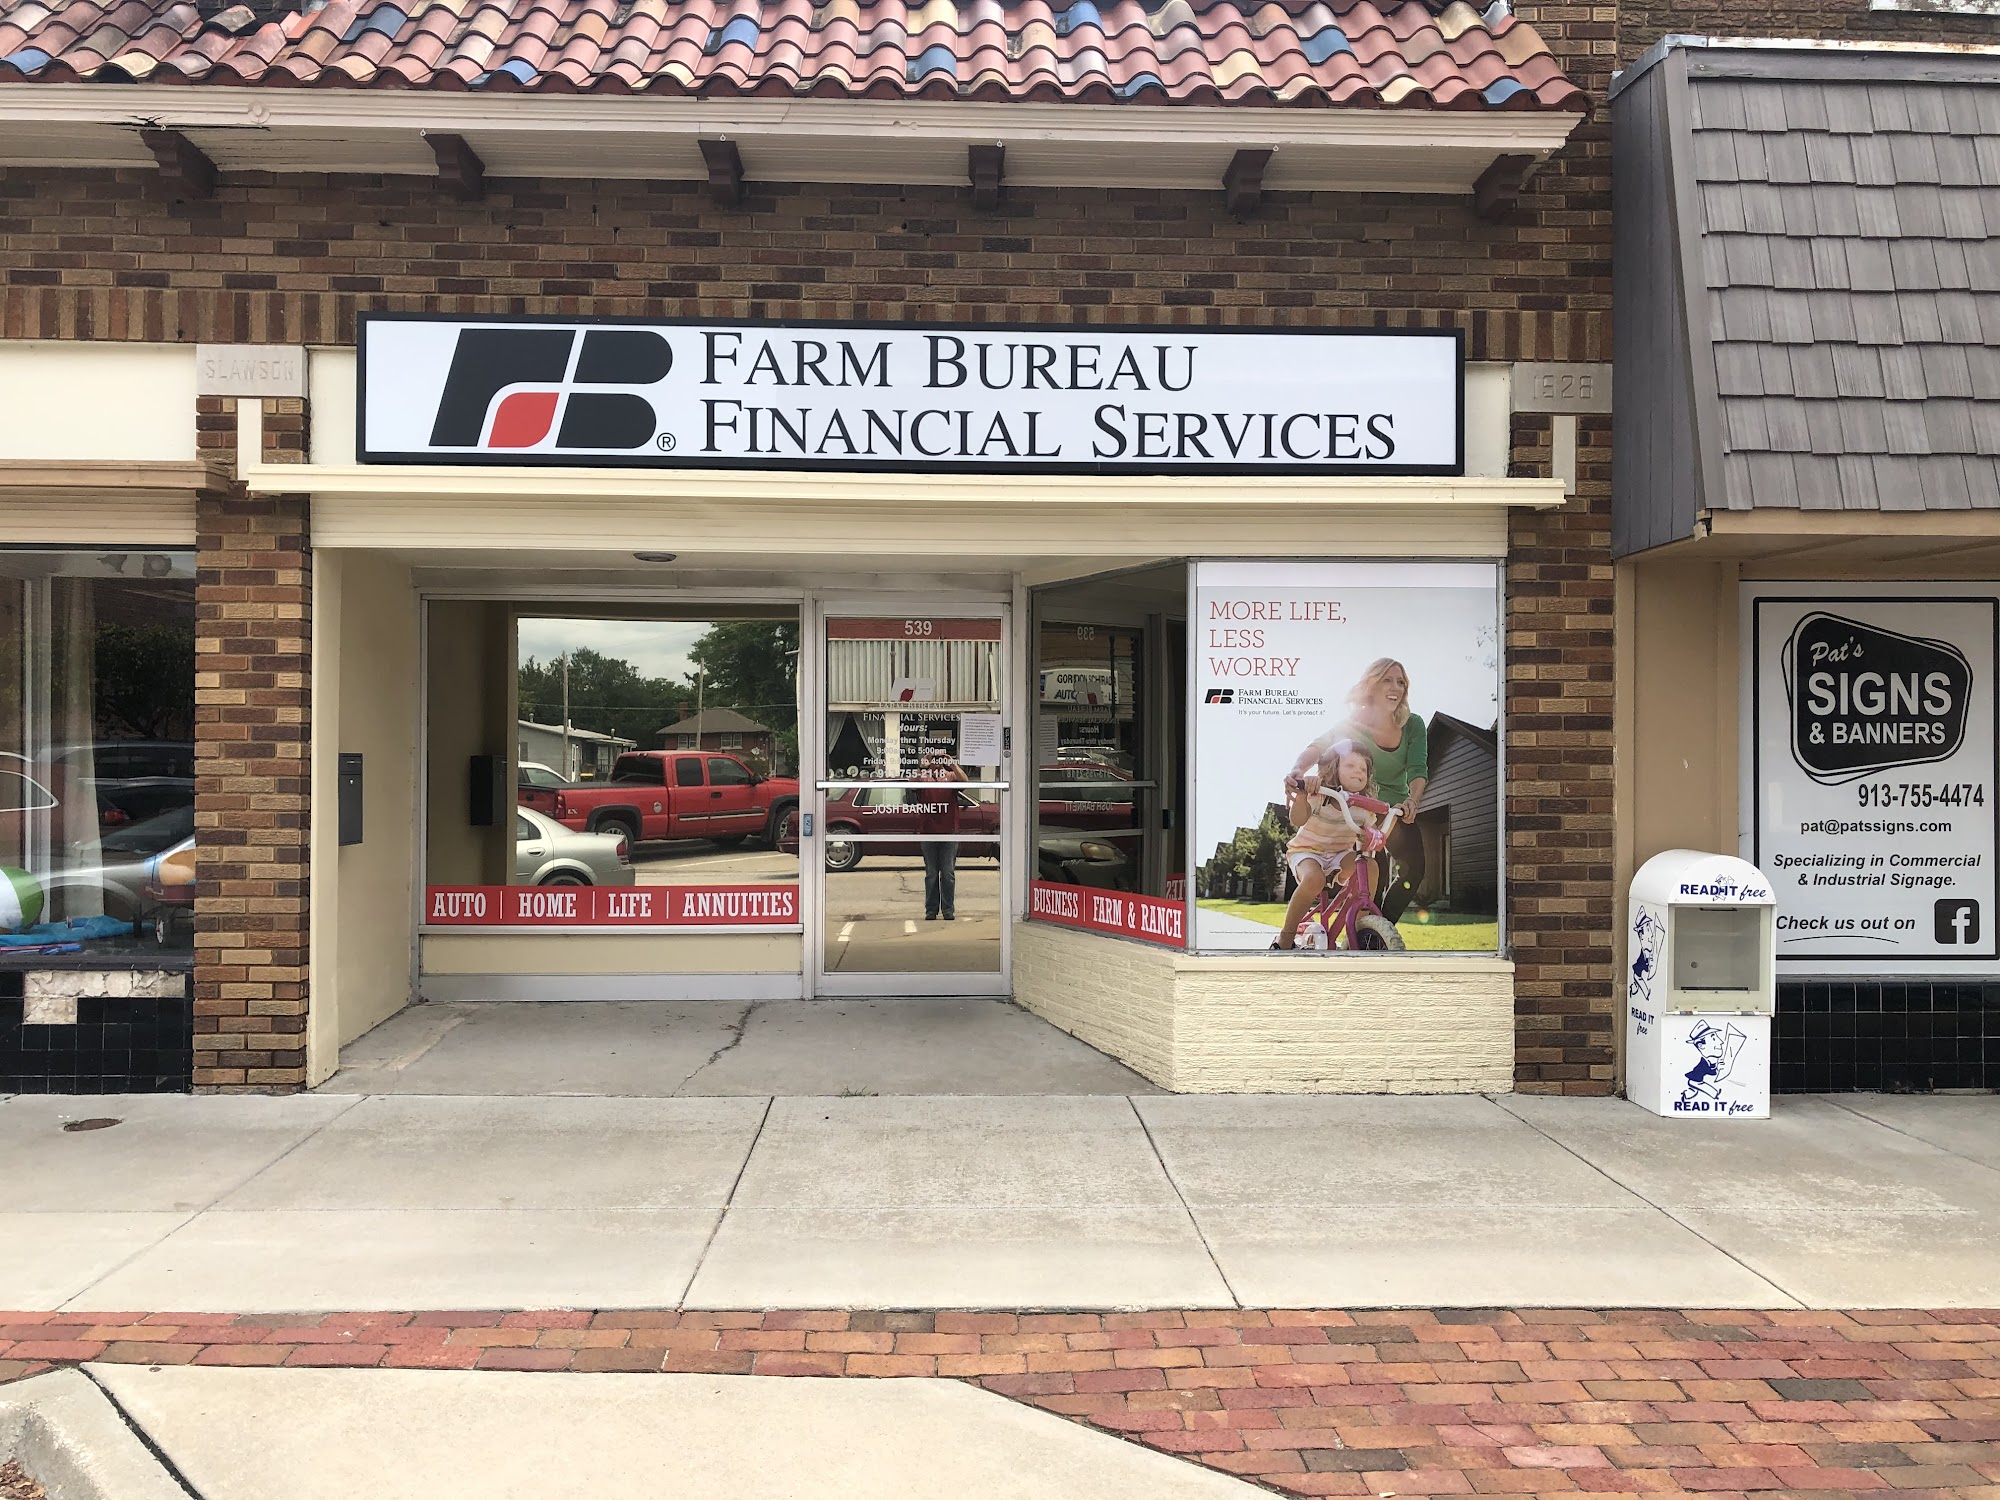 Farm Bureau Financial Services: Chad Robbins